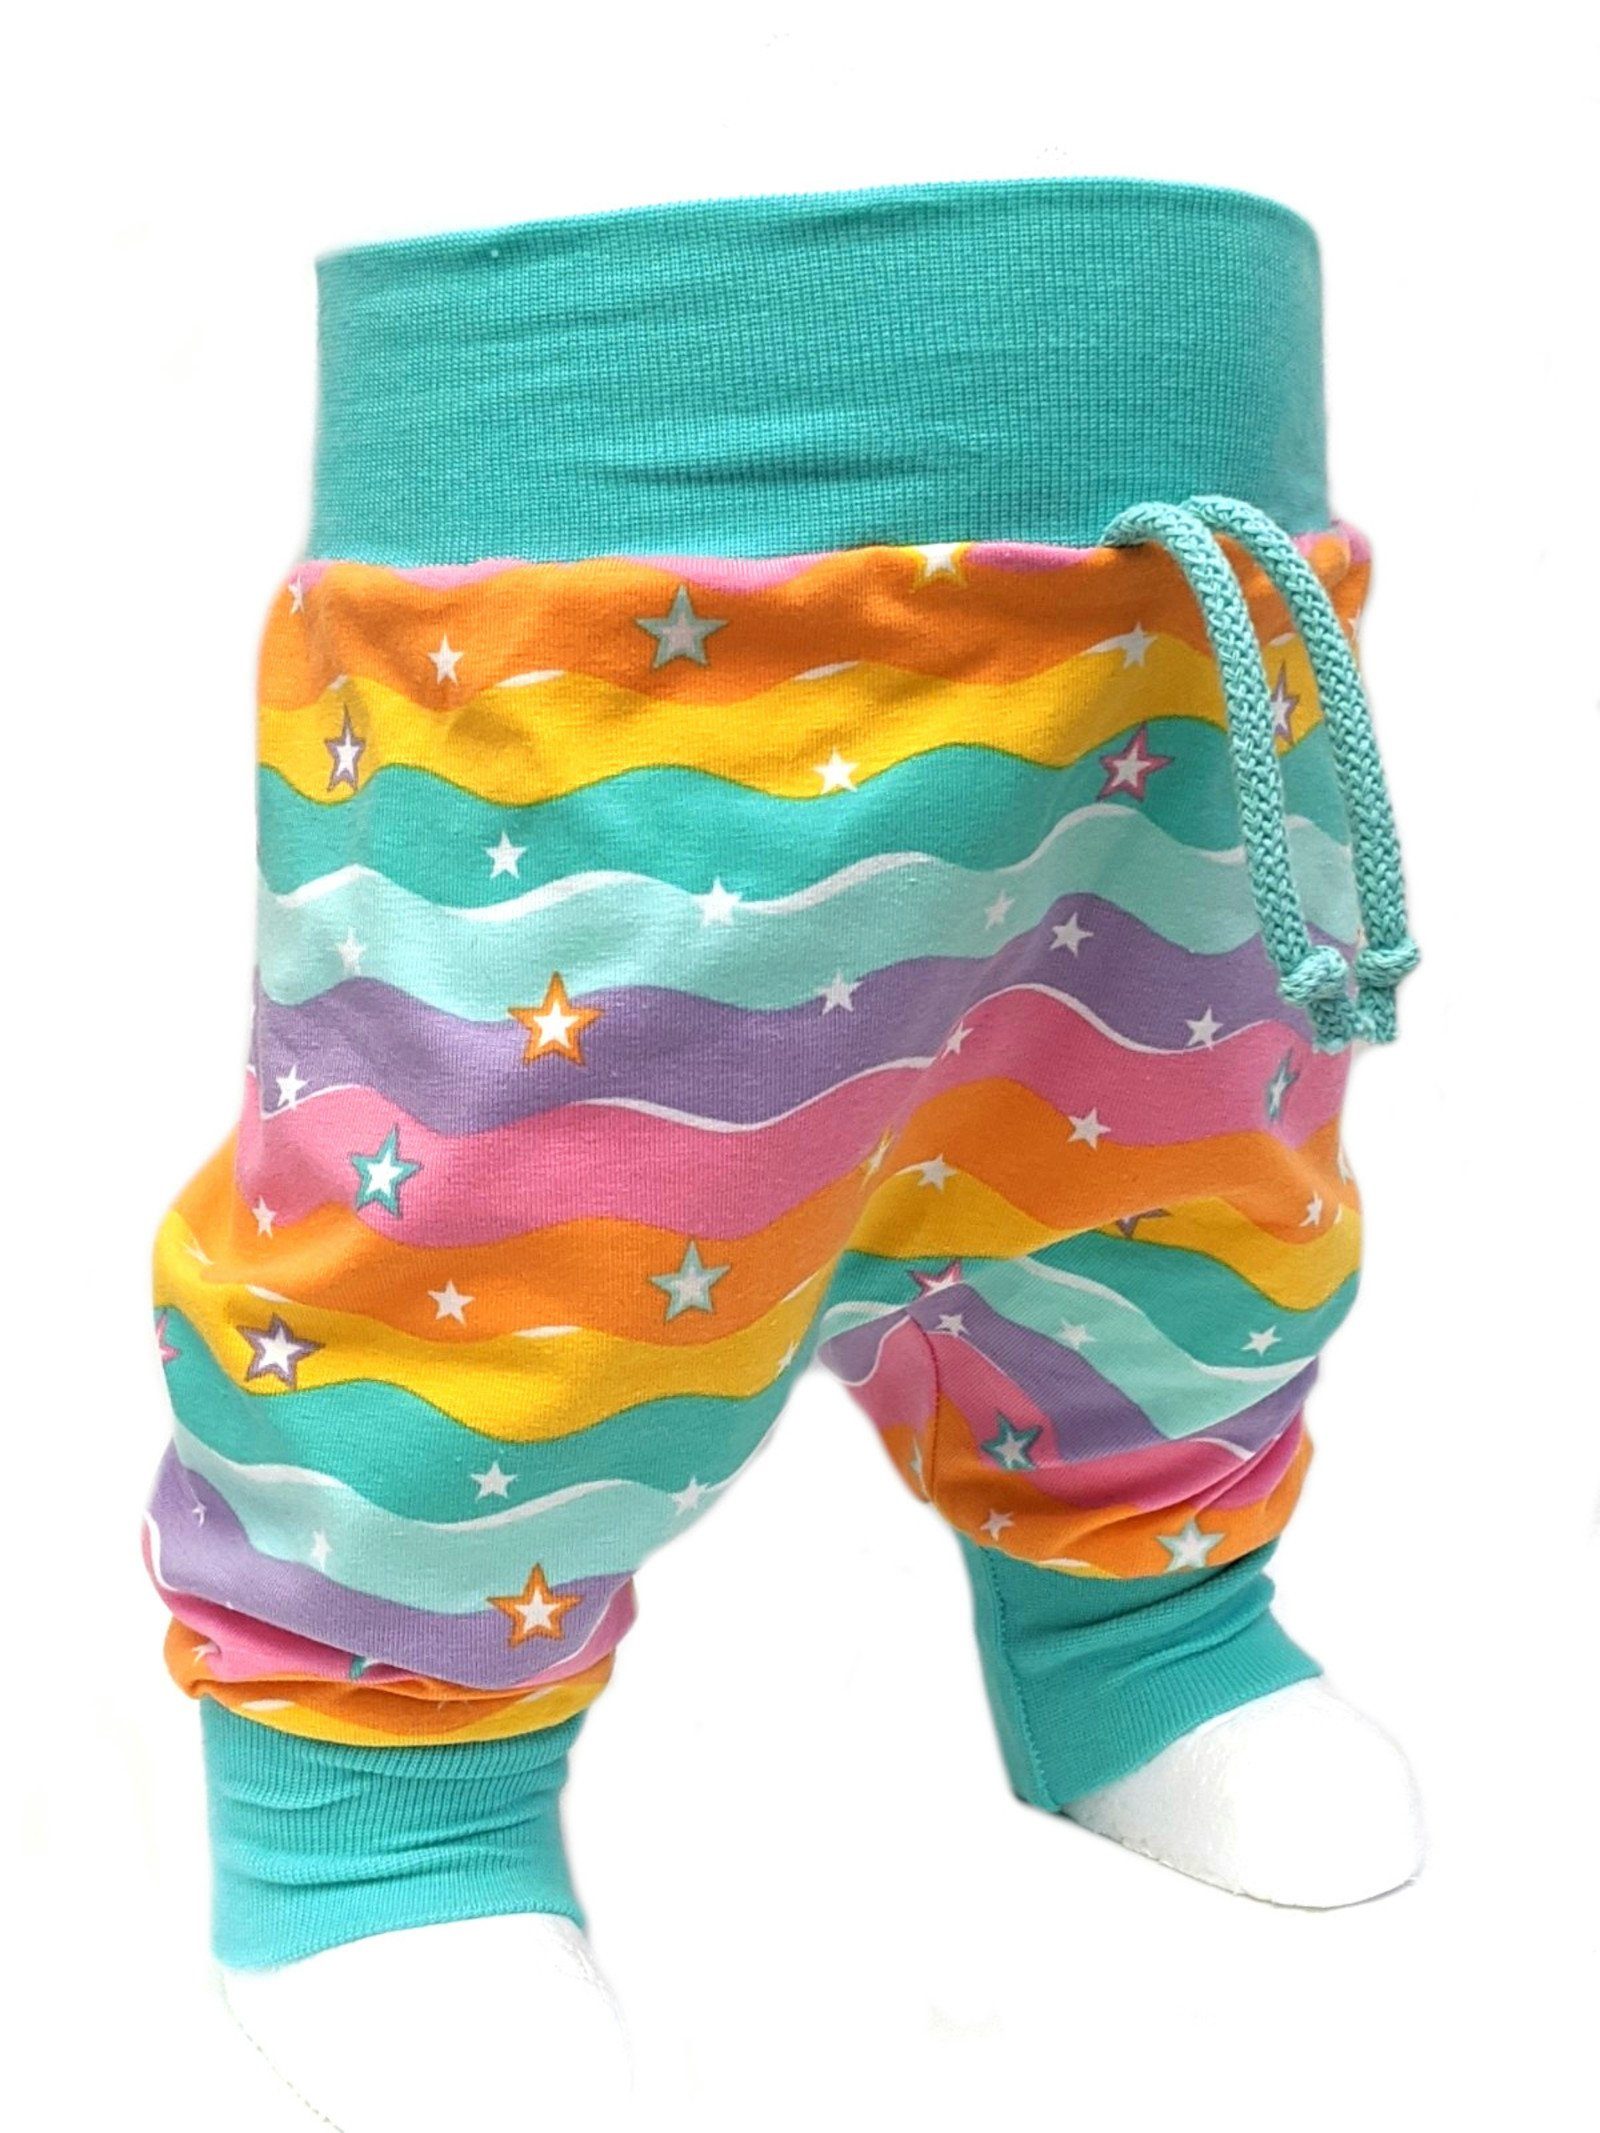 Corileo Pumphose Baby Pumphose Regenbogen mit Sterne Pastelltöne Kinderhose Spielhose Gr. 50 - 104 | Haremshosen